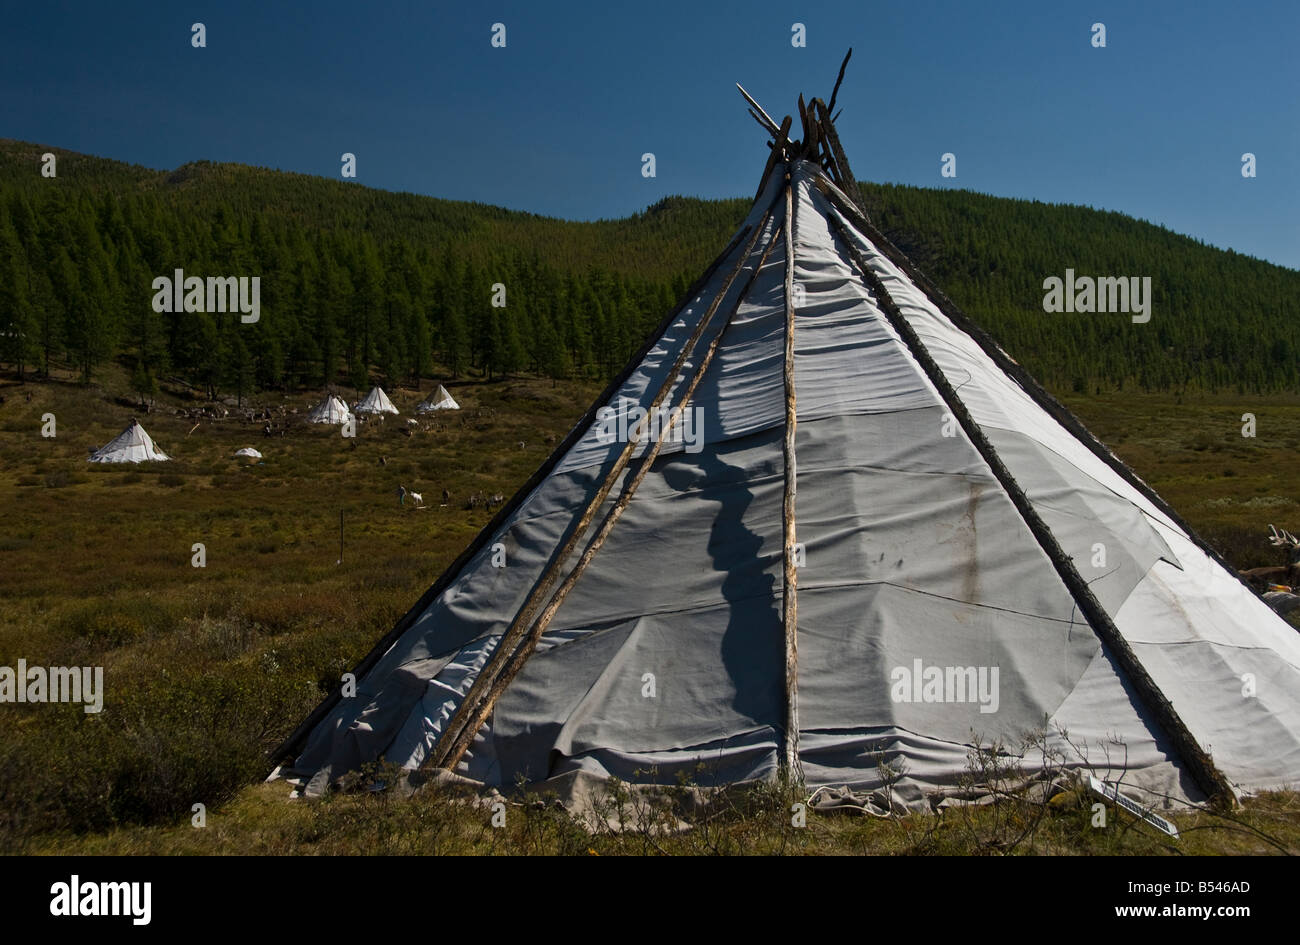 Tsaatan Tepee encampment Northern Mongolia Stock Photo